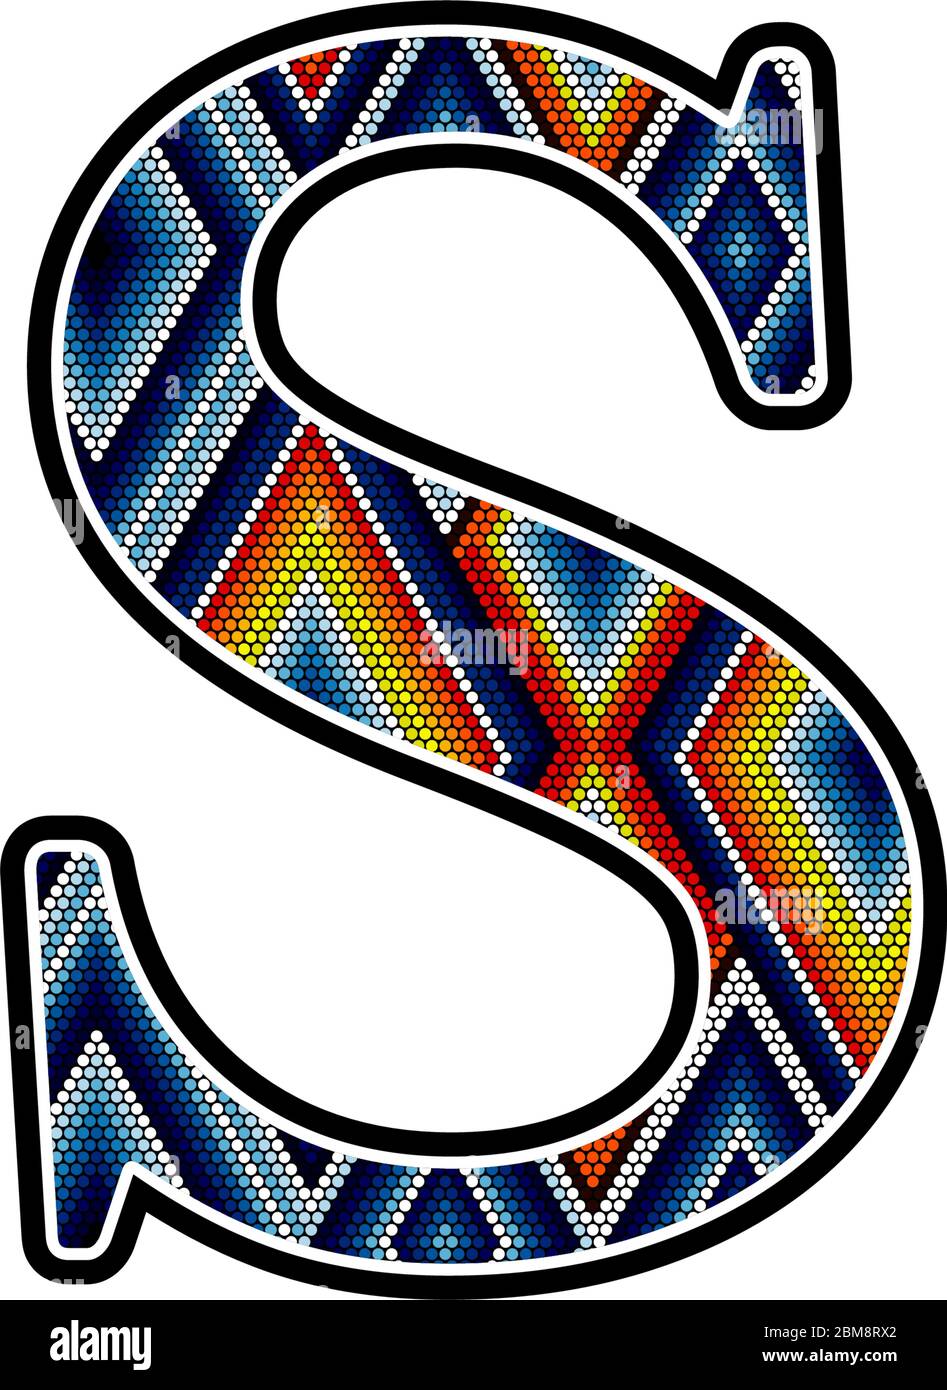 Initial Großbuchstaben S mit bunten Punkten abstraktes Design inspiriert in mexikanischen huichol Art-Stil. Isoliert auf weißem Hintergrund Stock Vektor